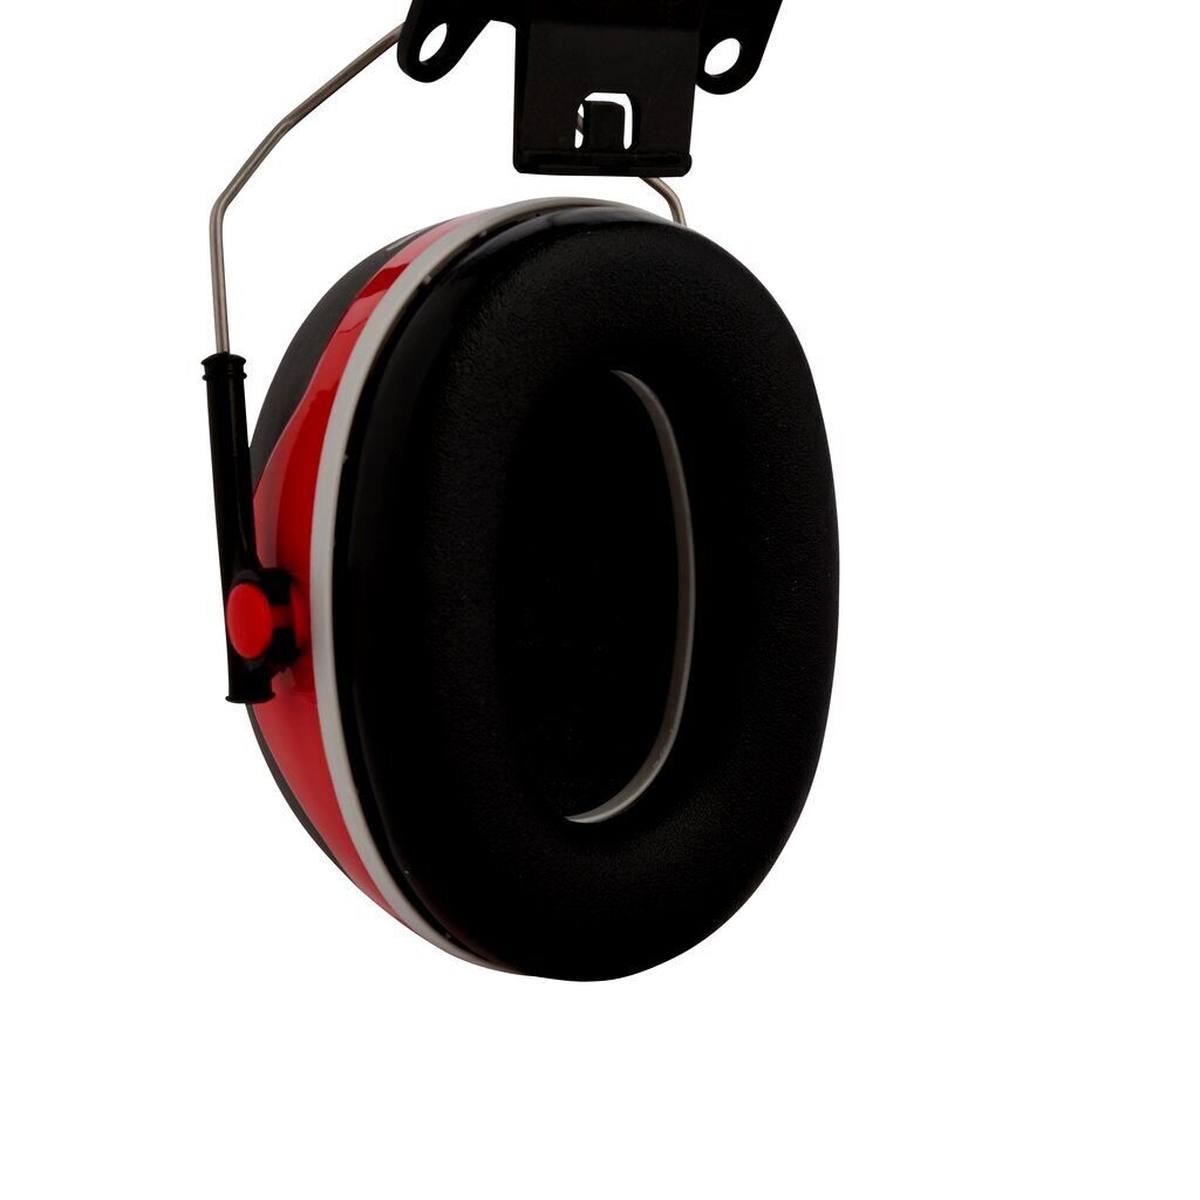 3M Peltor Kapselgehörschutz, X3P3E Helmbefestigung, rot, SNR = 32 dB mit Helmadapter P3E (für alle 3M Helme, ausgenommen G2000)